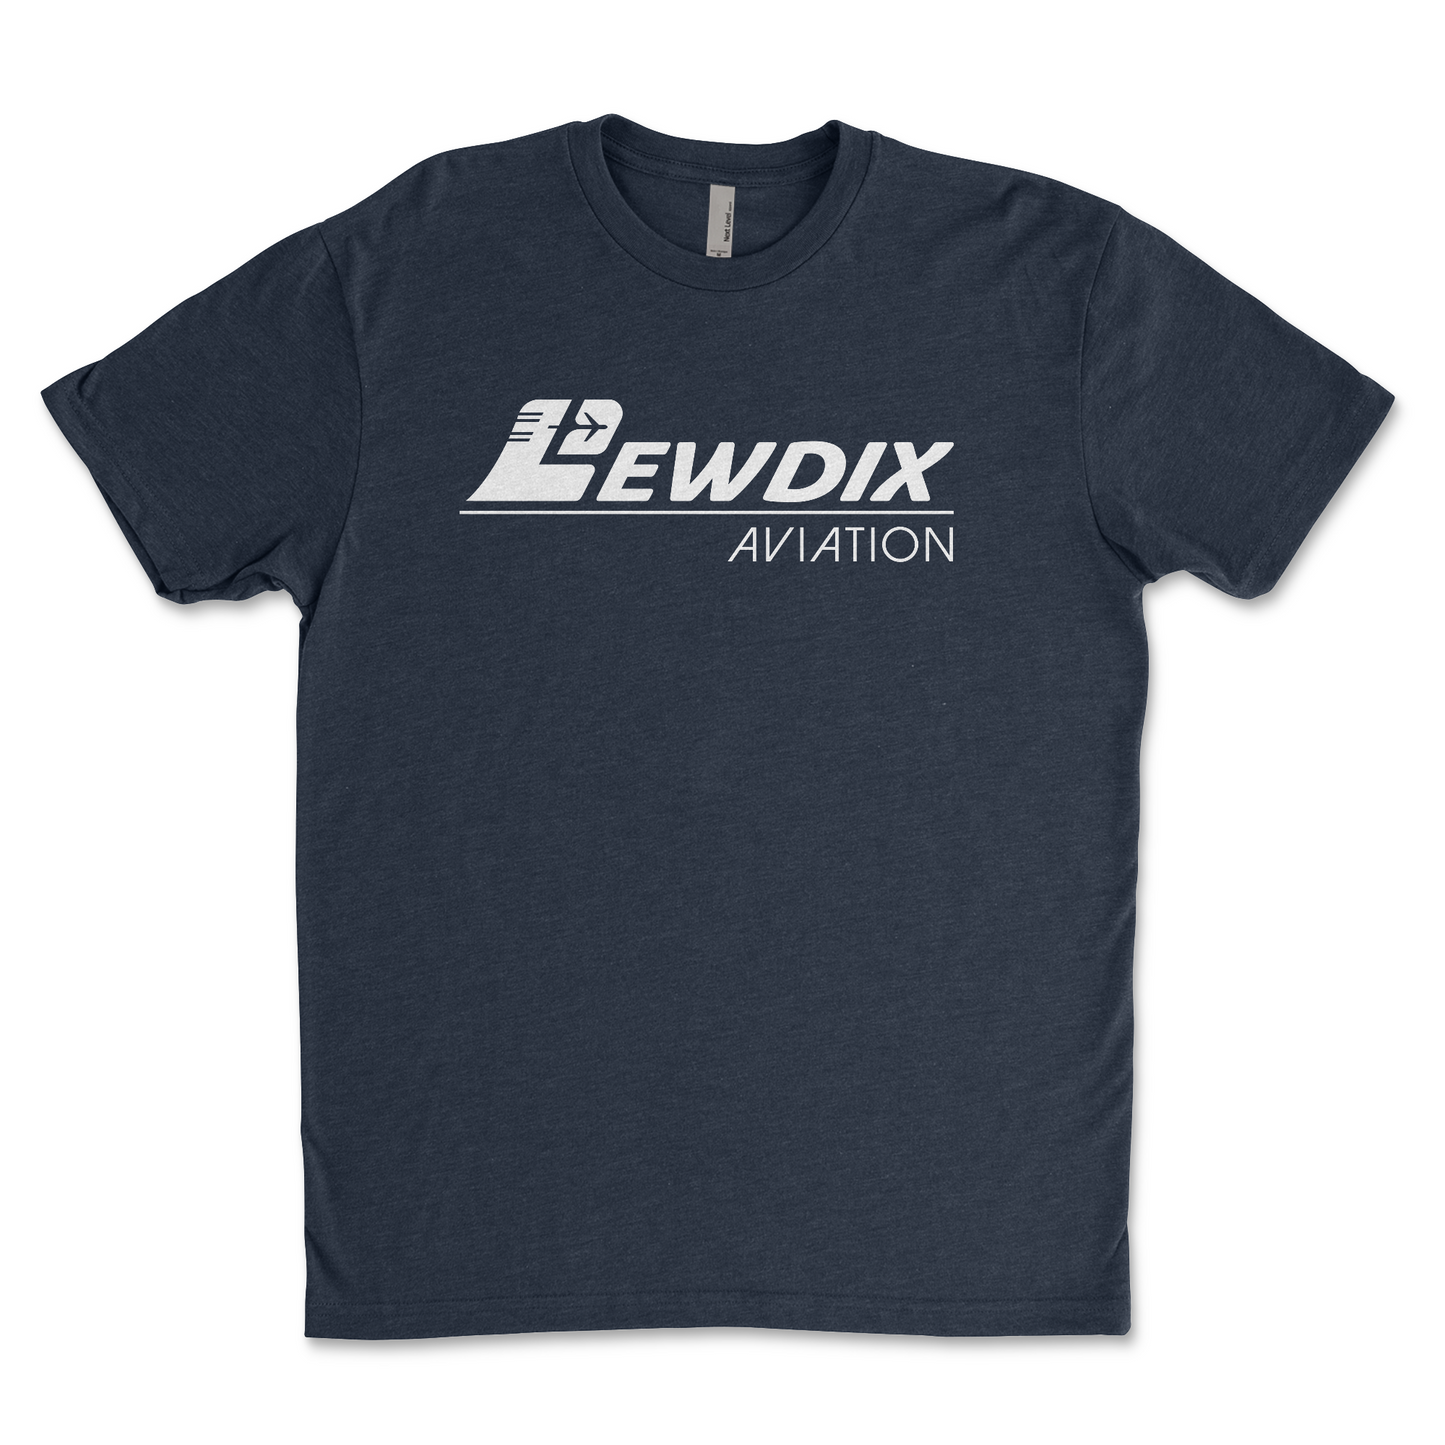 LewDix Aviation Signature T-Shirt